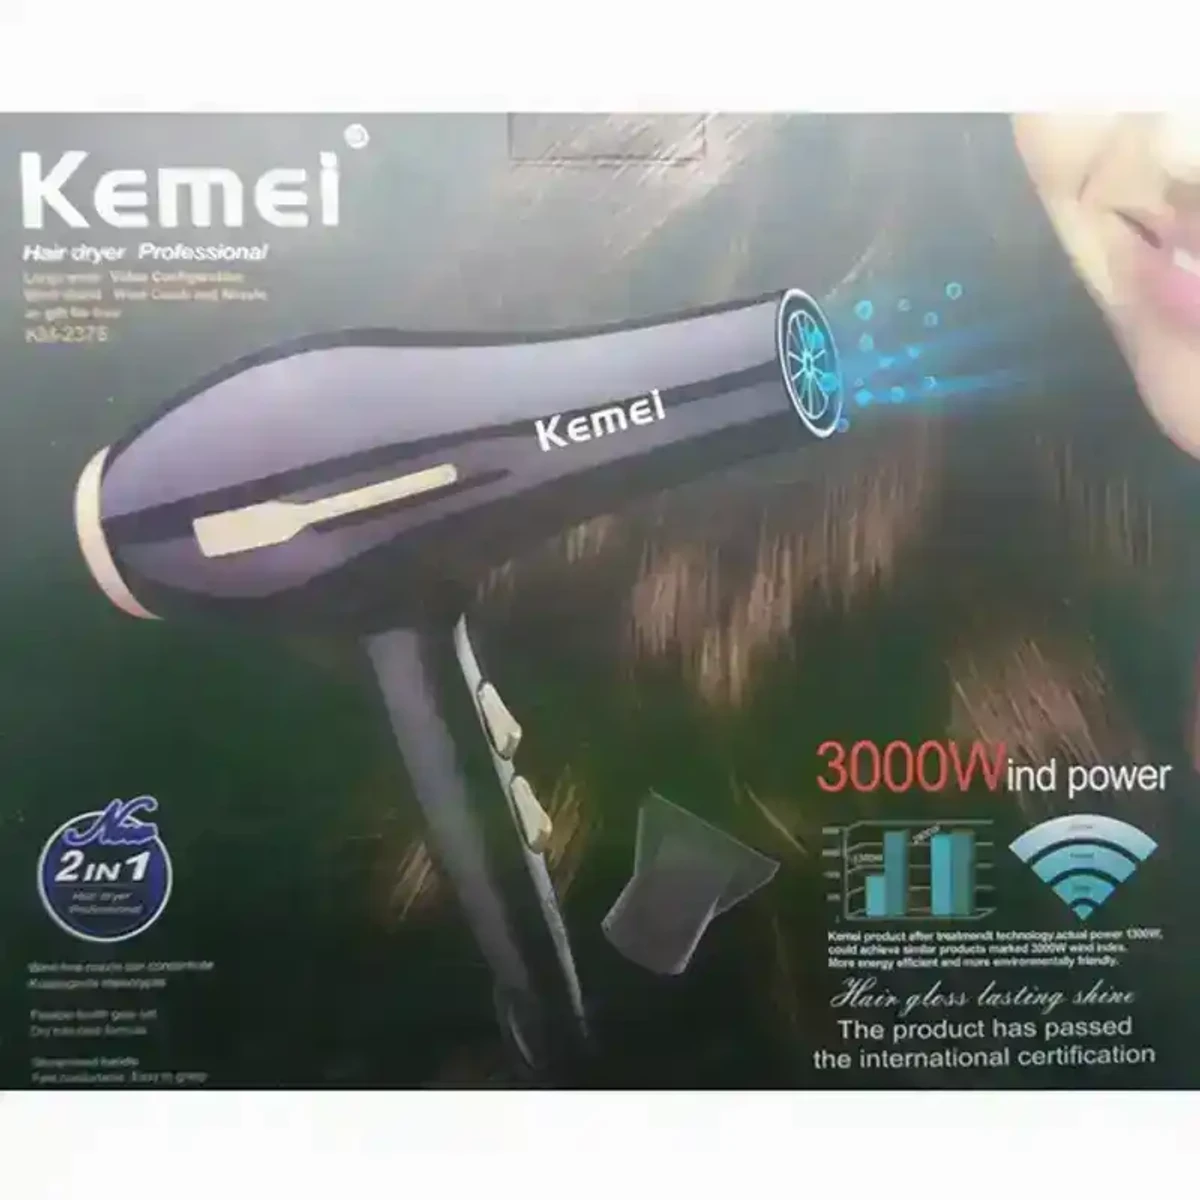 Kemei-2-in-1-hair-dryer-3000w